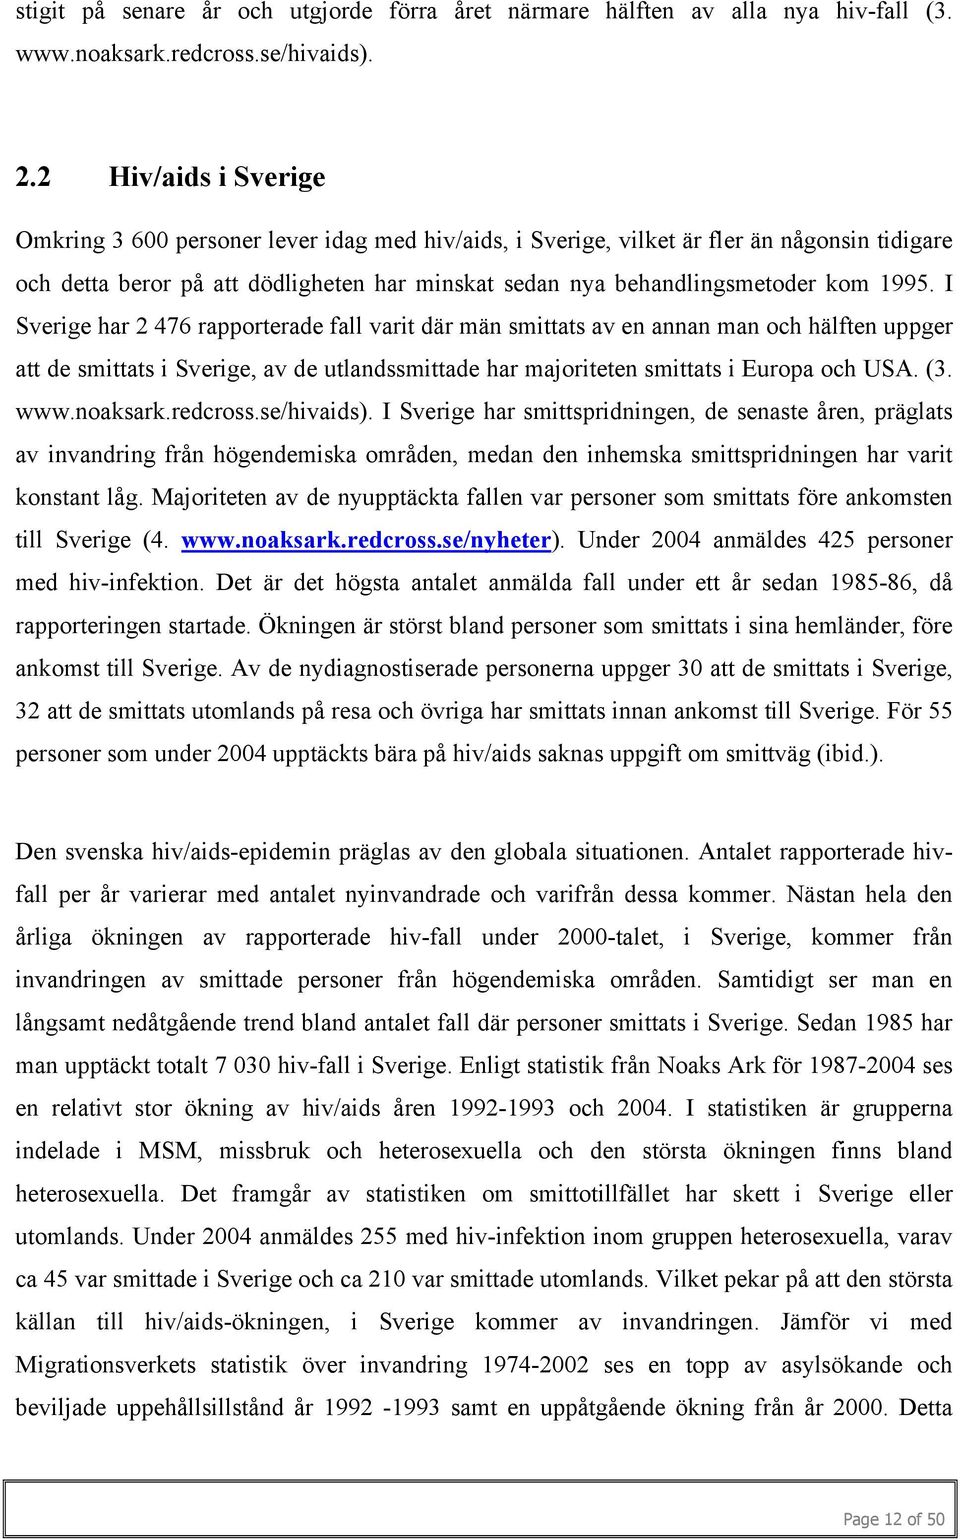 1995. I Sverige har 2 476 rapporterade fall varit där män smittats av en annan man och hälften uppger att de smittats i Sverige, av de utlandssmittade har majoriteten smittats i Europa och USA. (3.